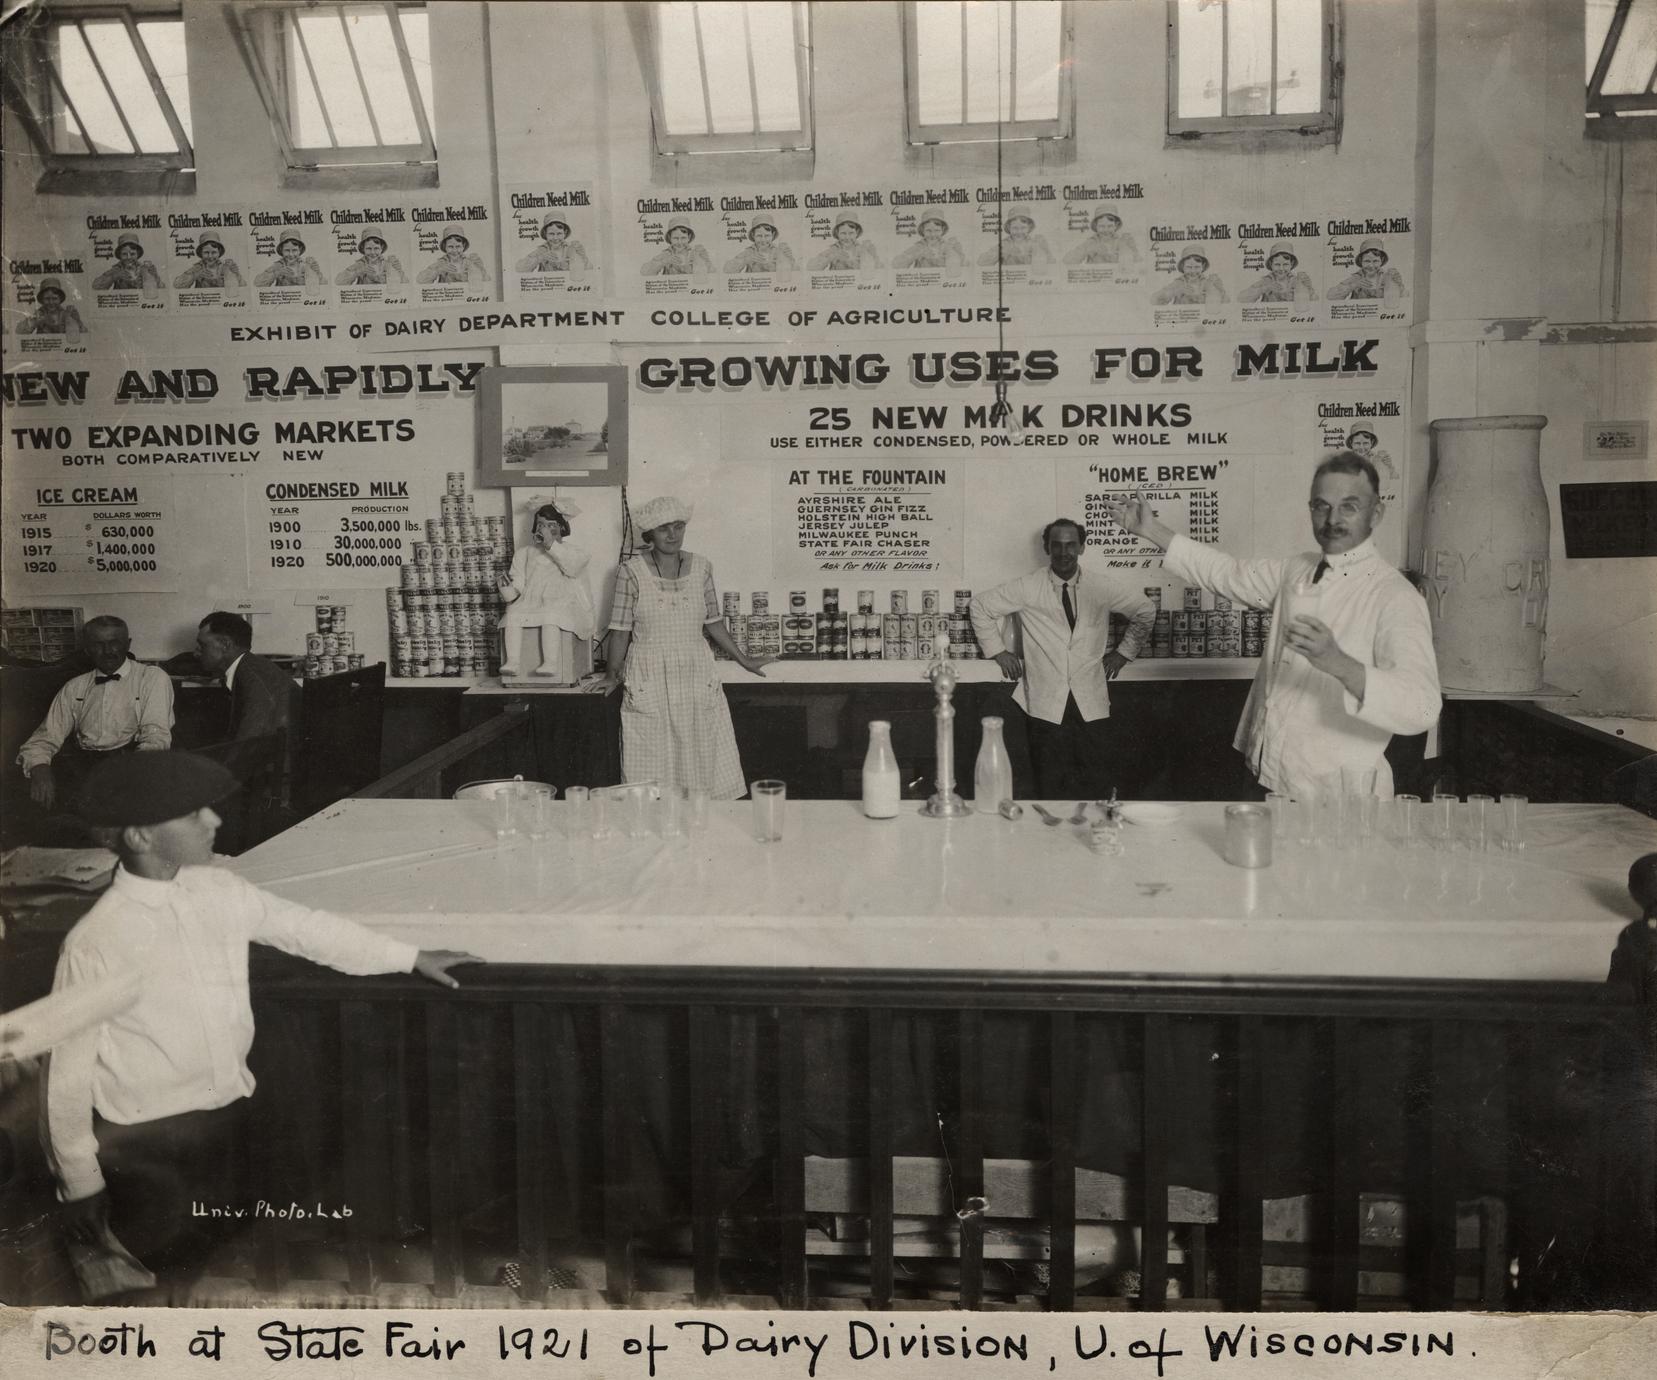 Dairy division fair booth, 1921